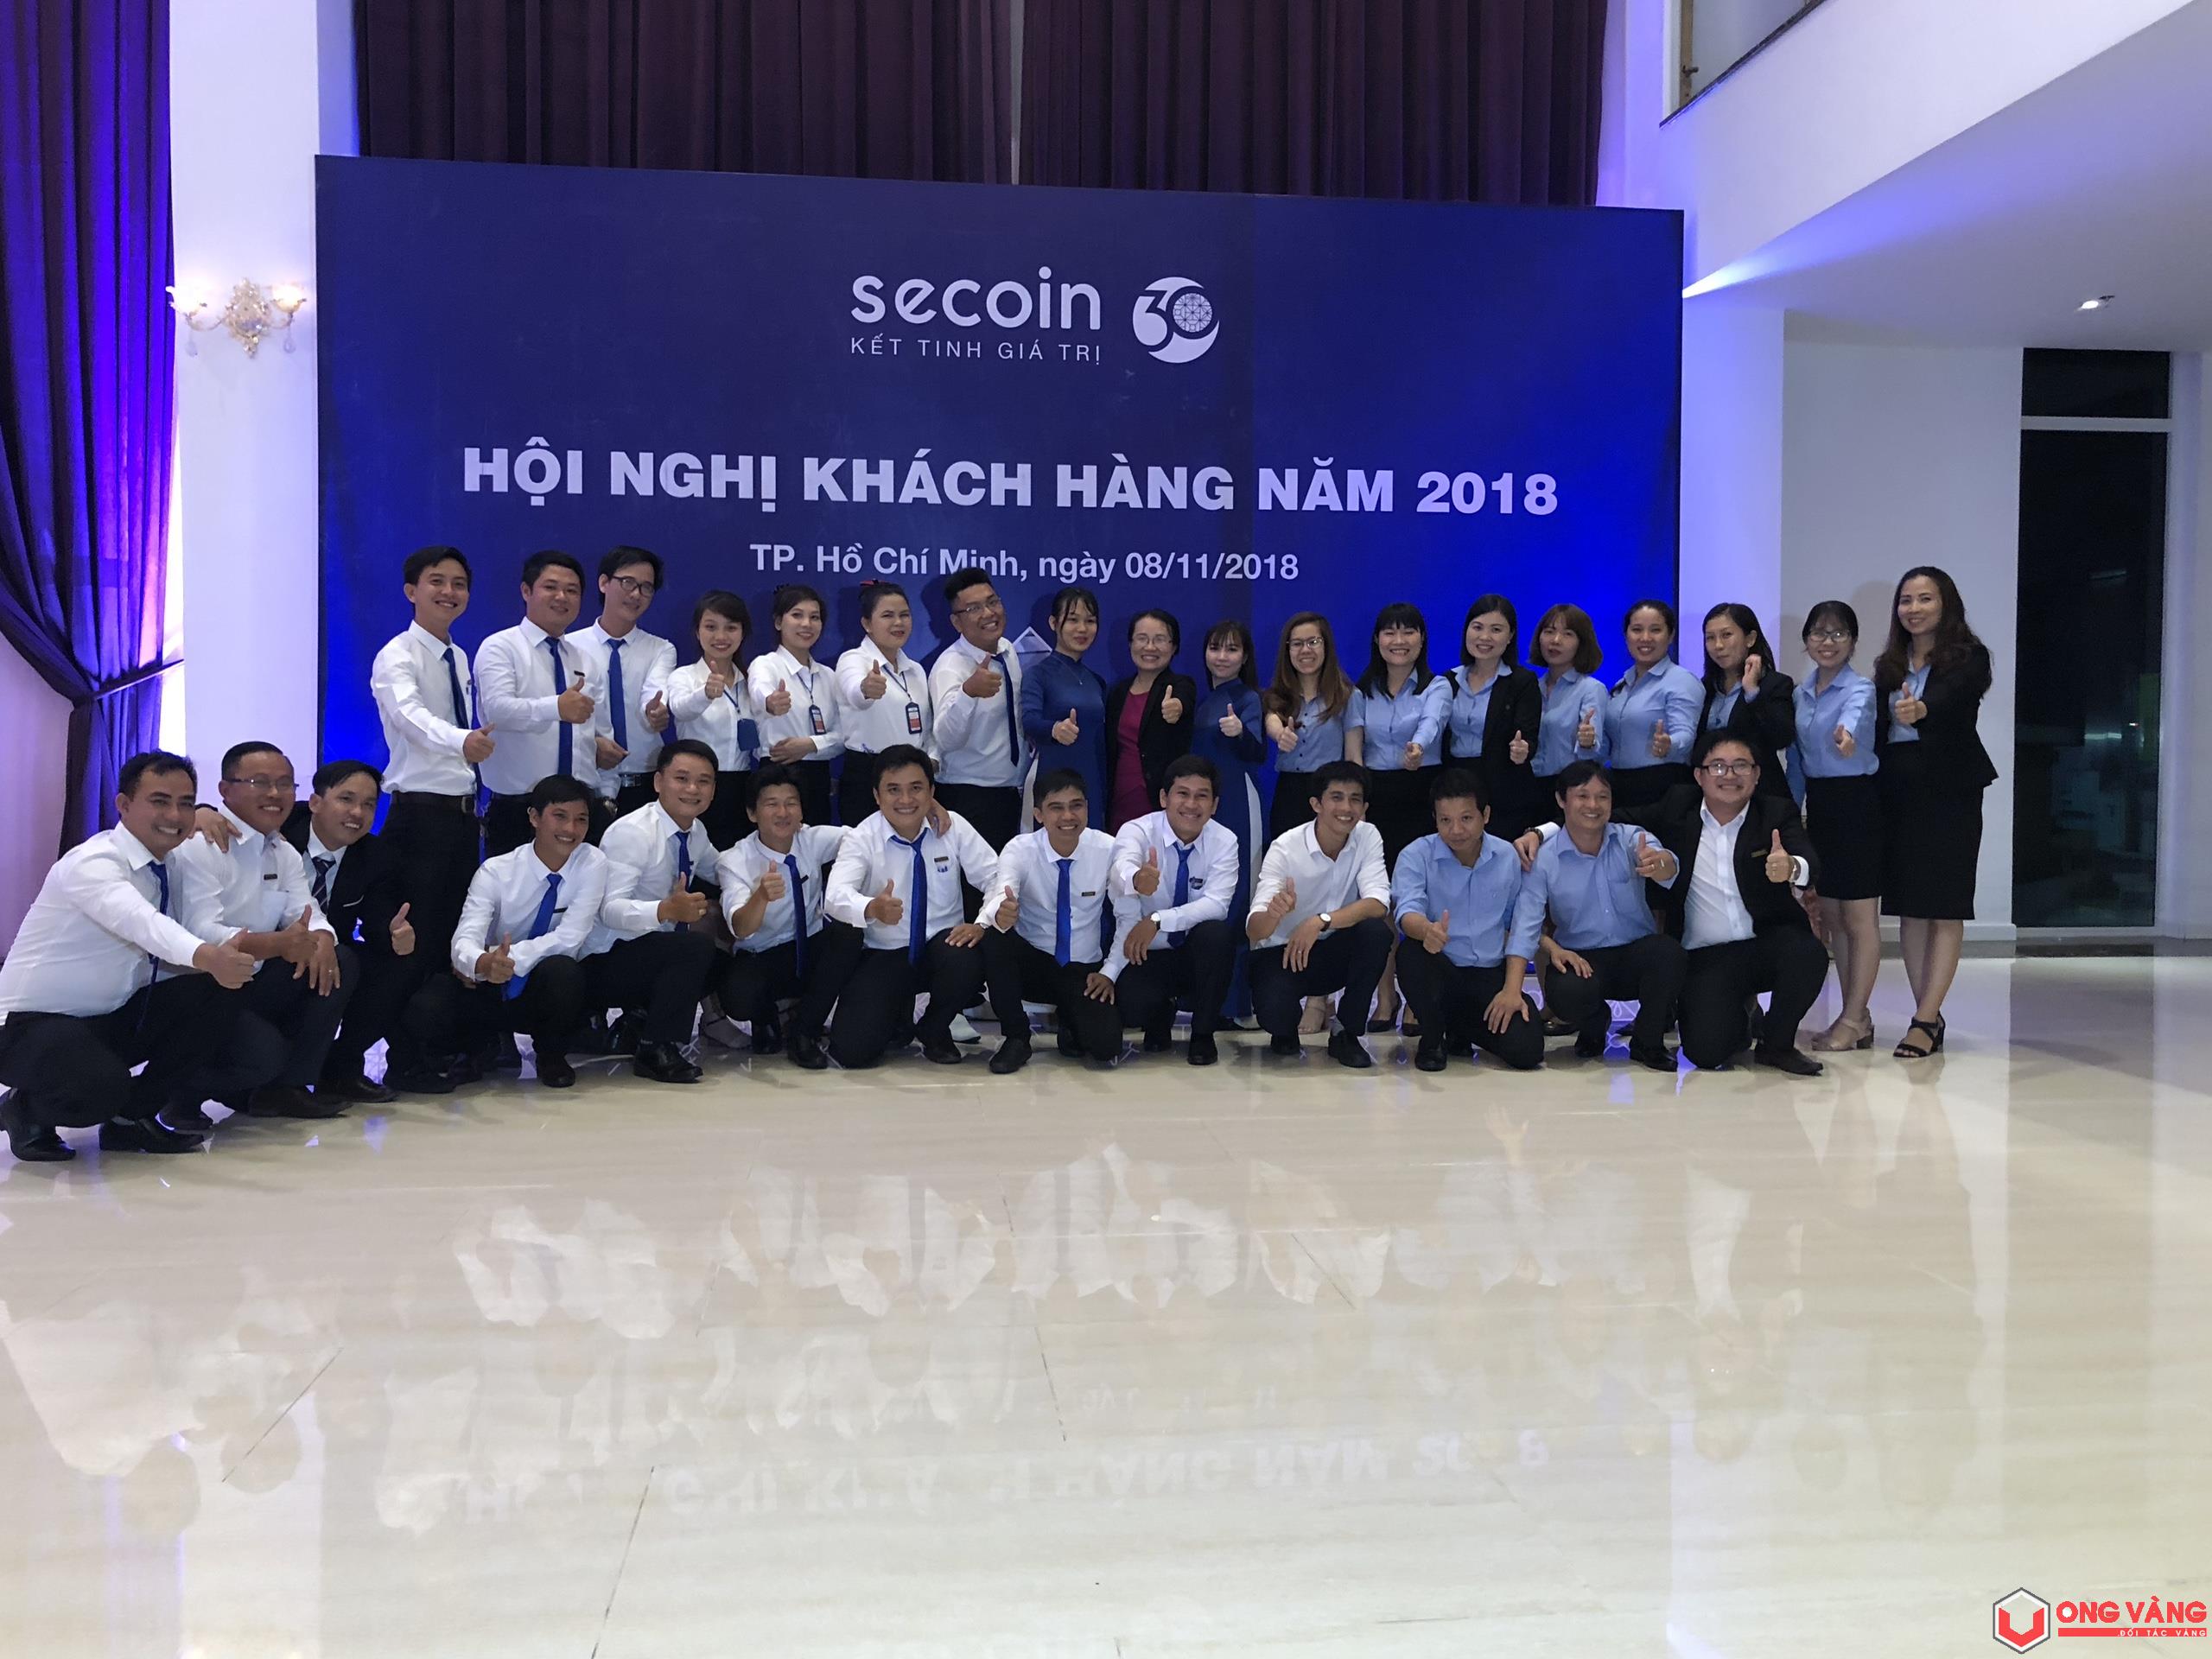 Hội nghị khách hàng Secoin - Ong Vàng 2018